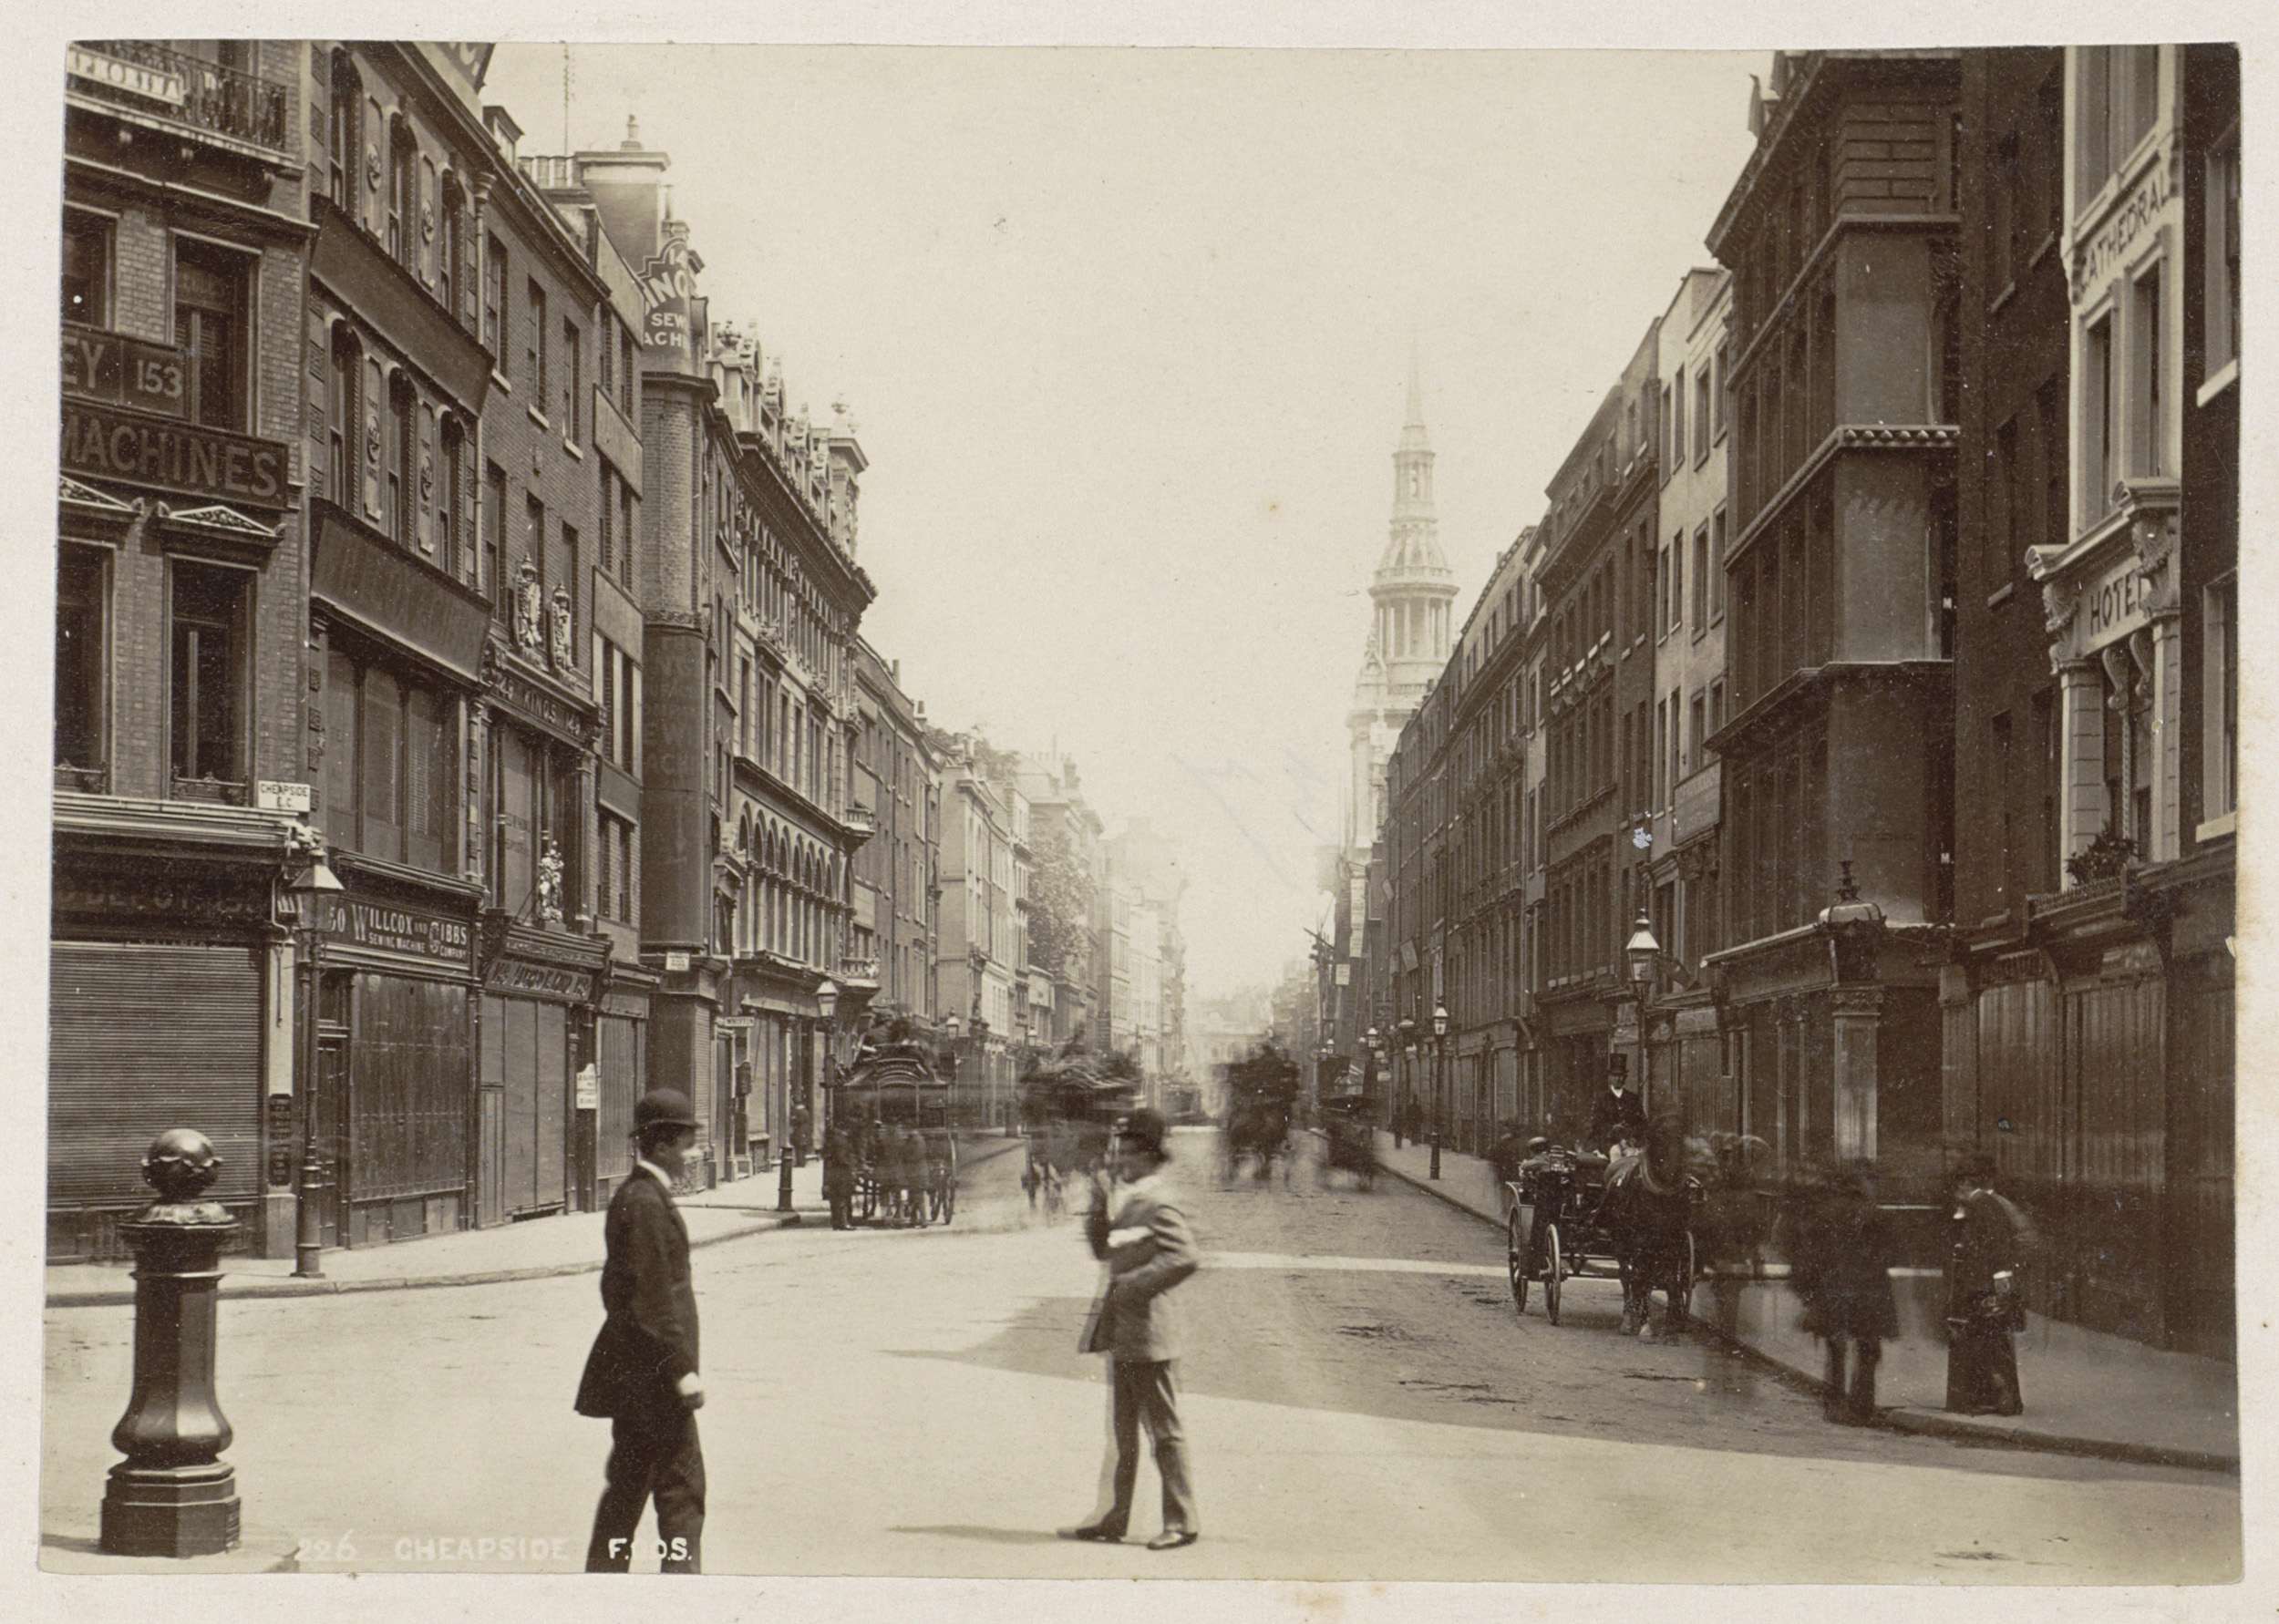 Cheapside, Voorbijgangers en coupledenkoetsen in Cheapside in Londen, op de achtergrond de kerk St Mary-le-Bow, Cheapside London